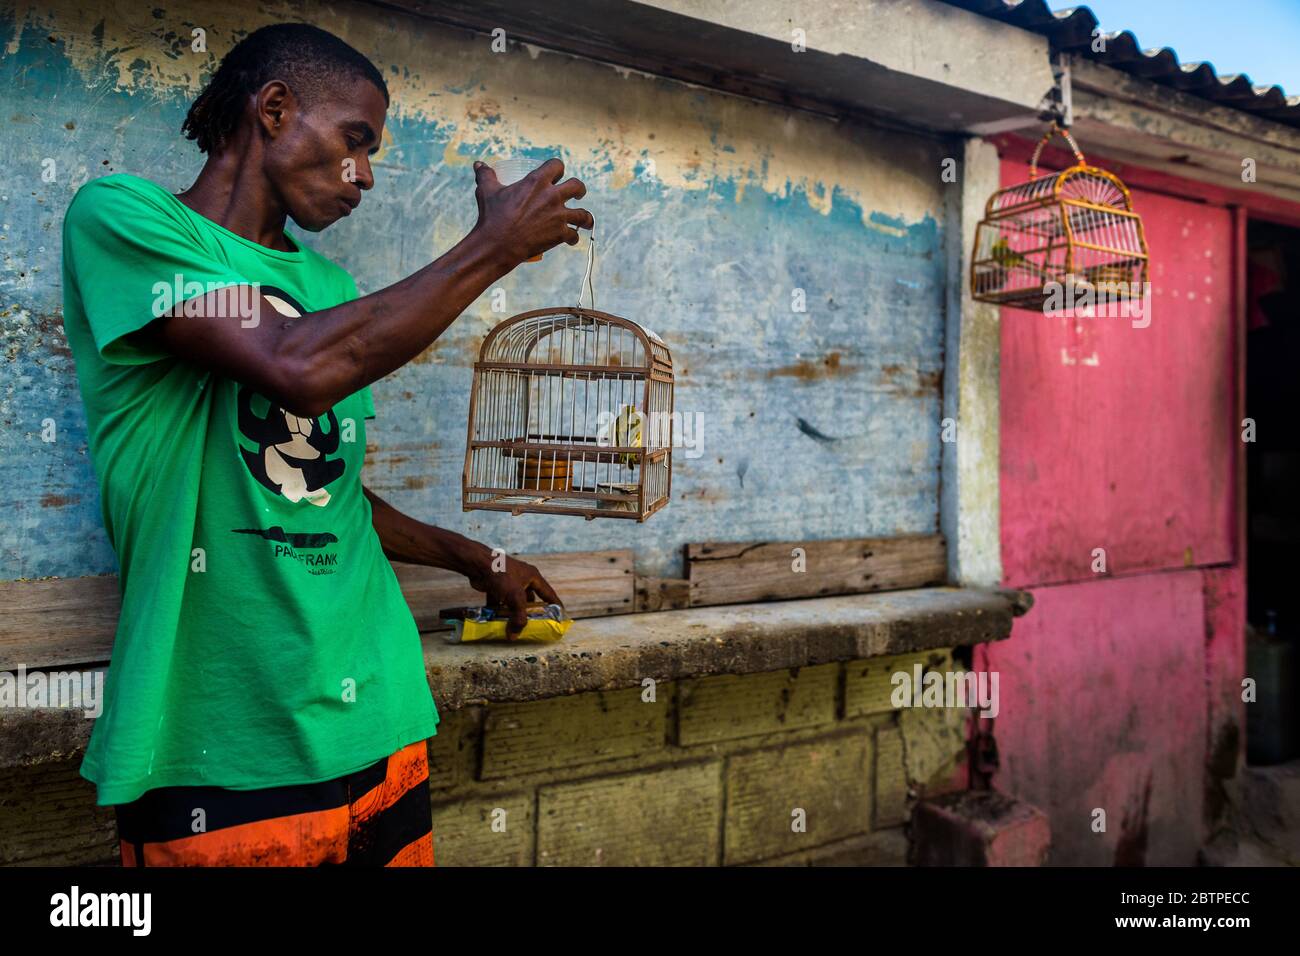 Un vendeur d'oiseaux colombien détient une cage à oiseaux, avec un canari à l'intérieur, sur le marché des oiseaux à Cartagena, en Colombie. Banque D'Images